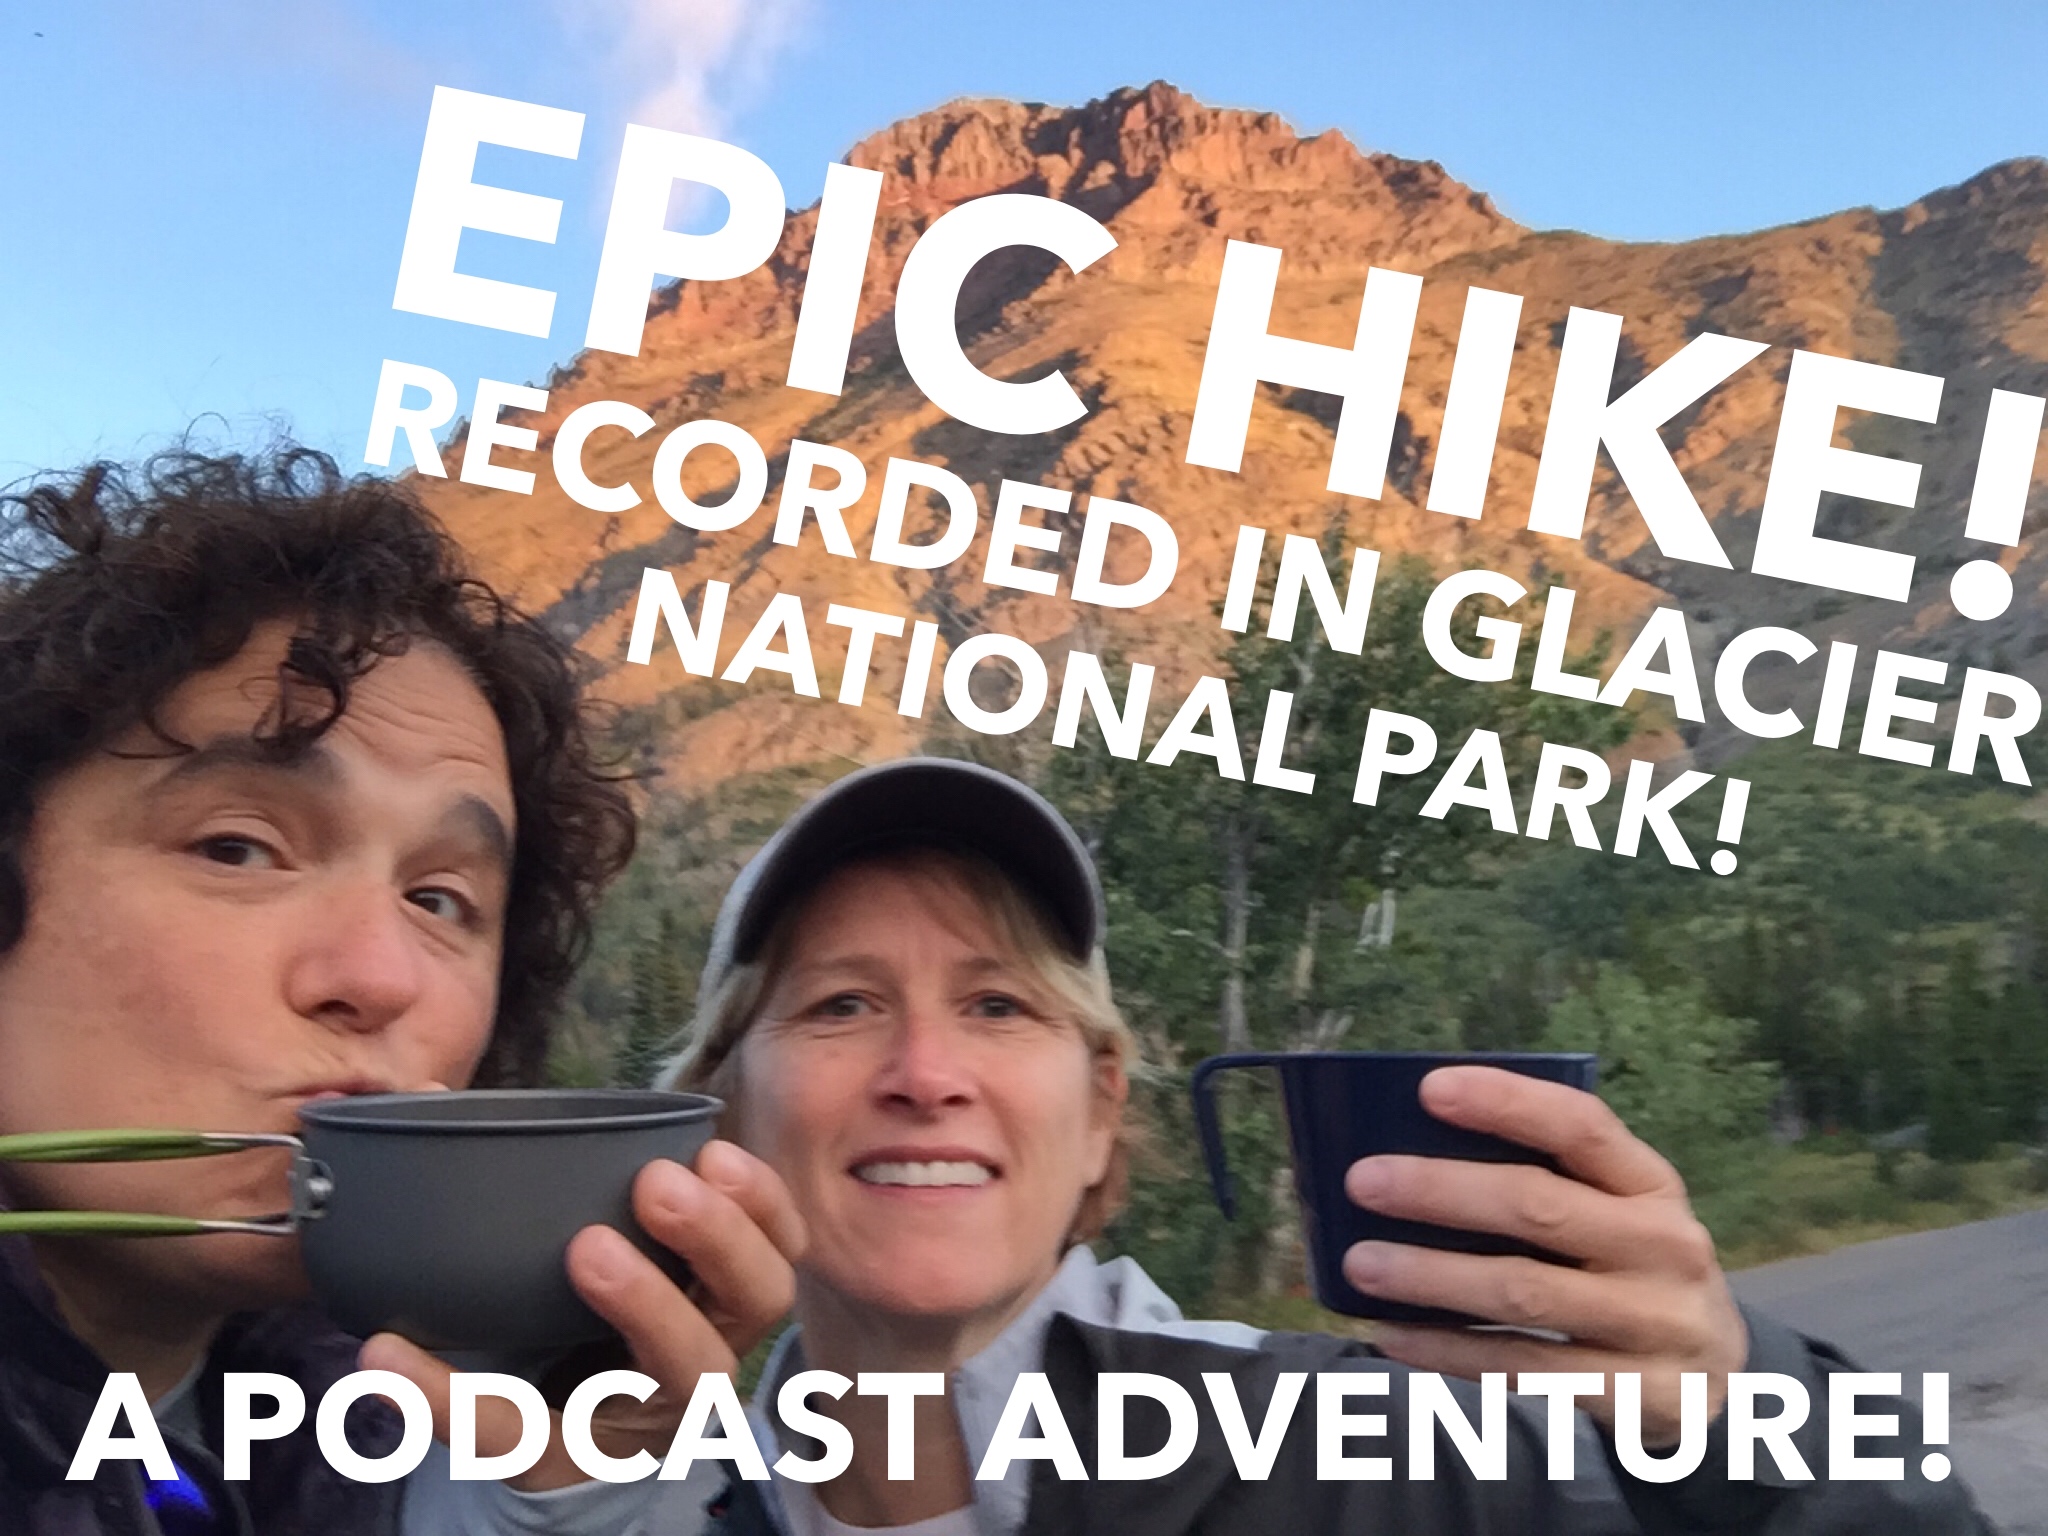 Epic-Hike-in-Glacier